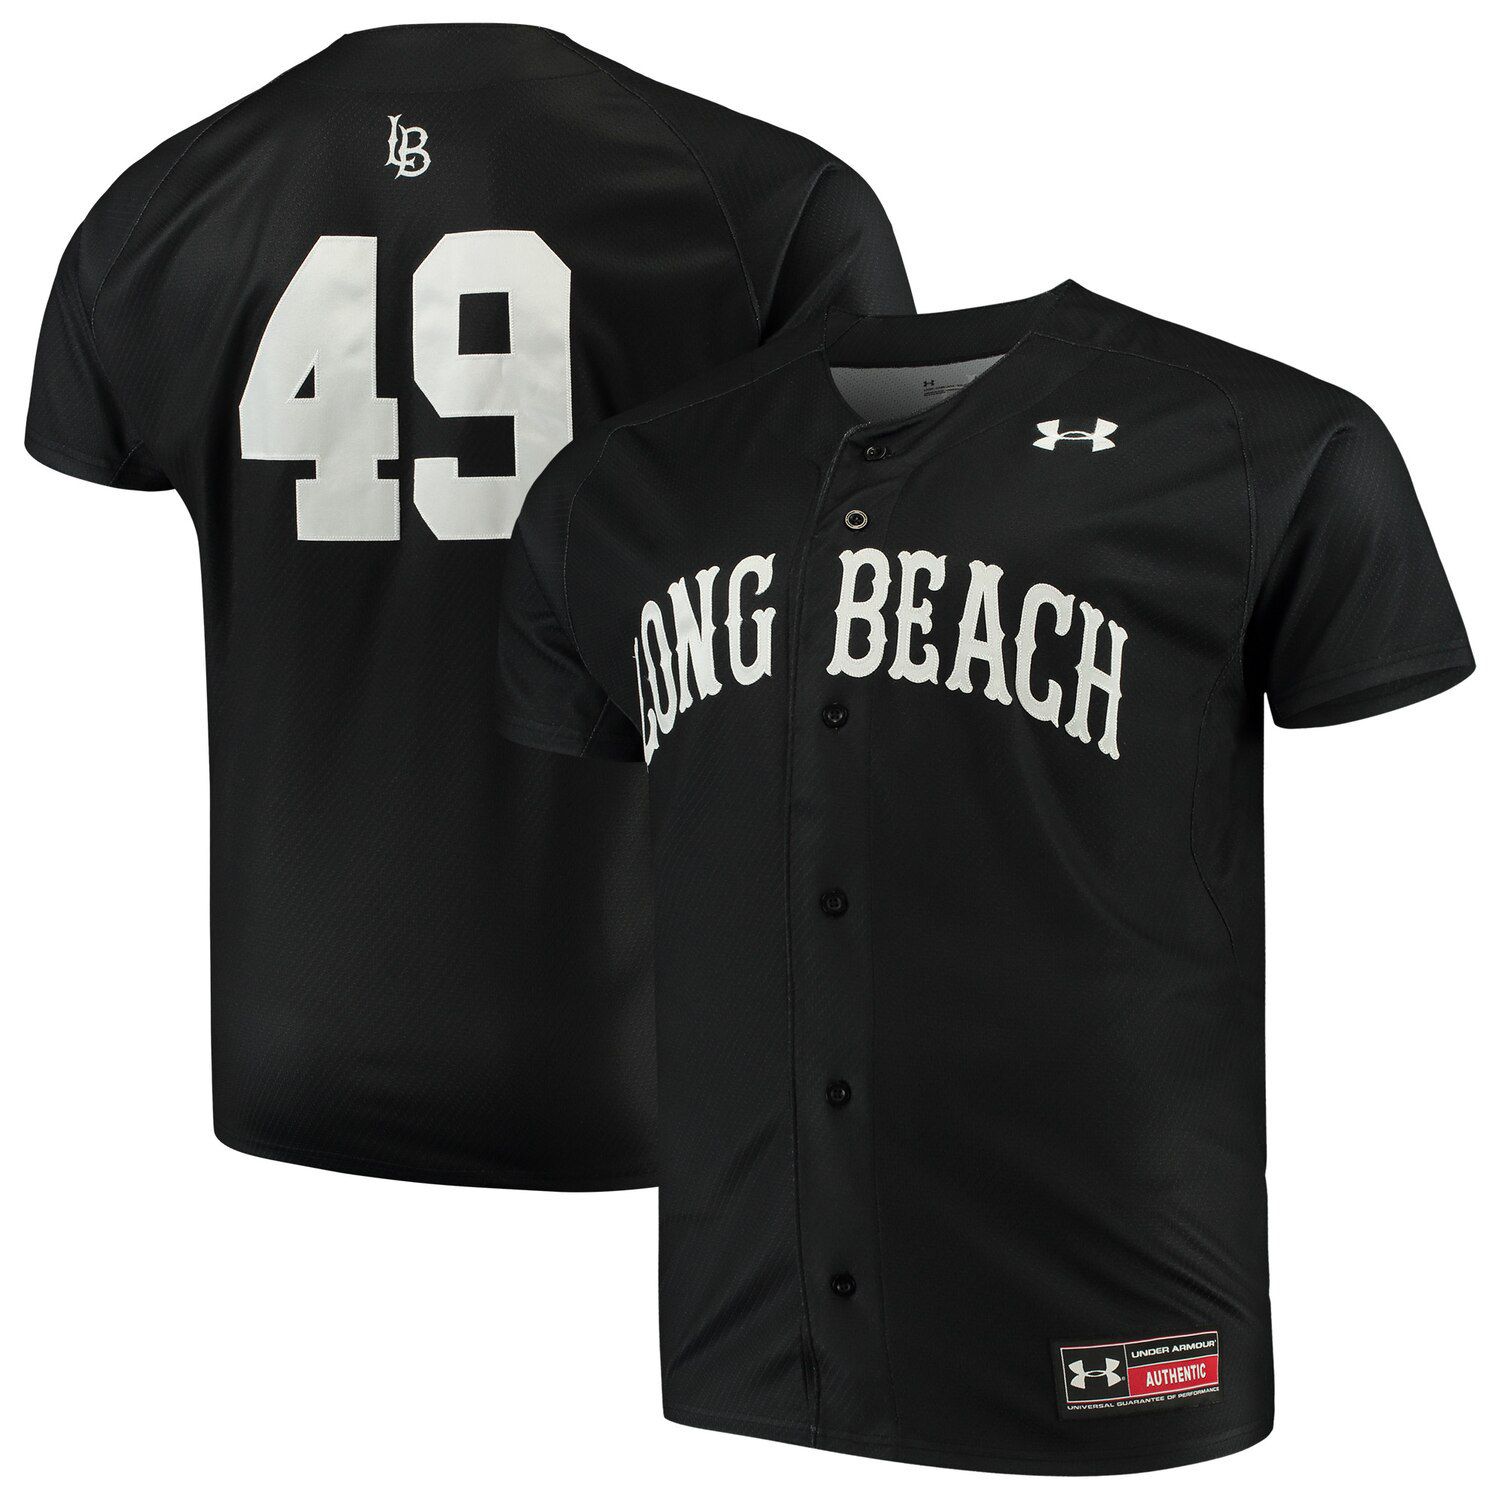 long beach state baseball jersey